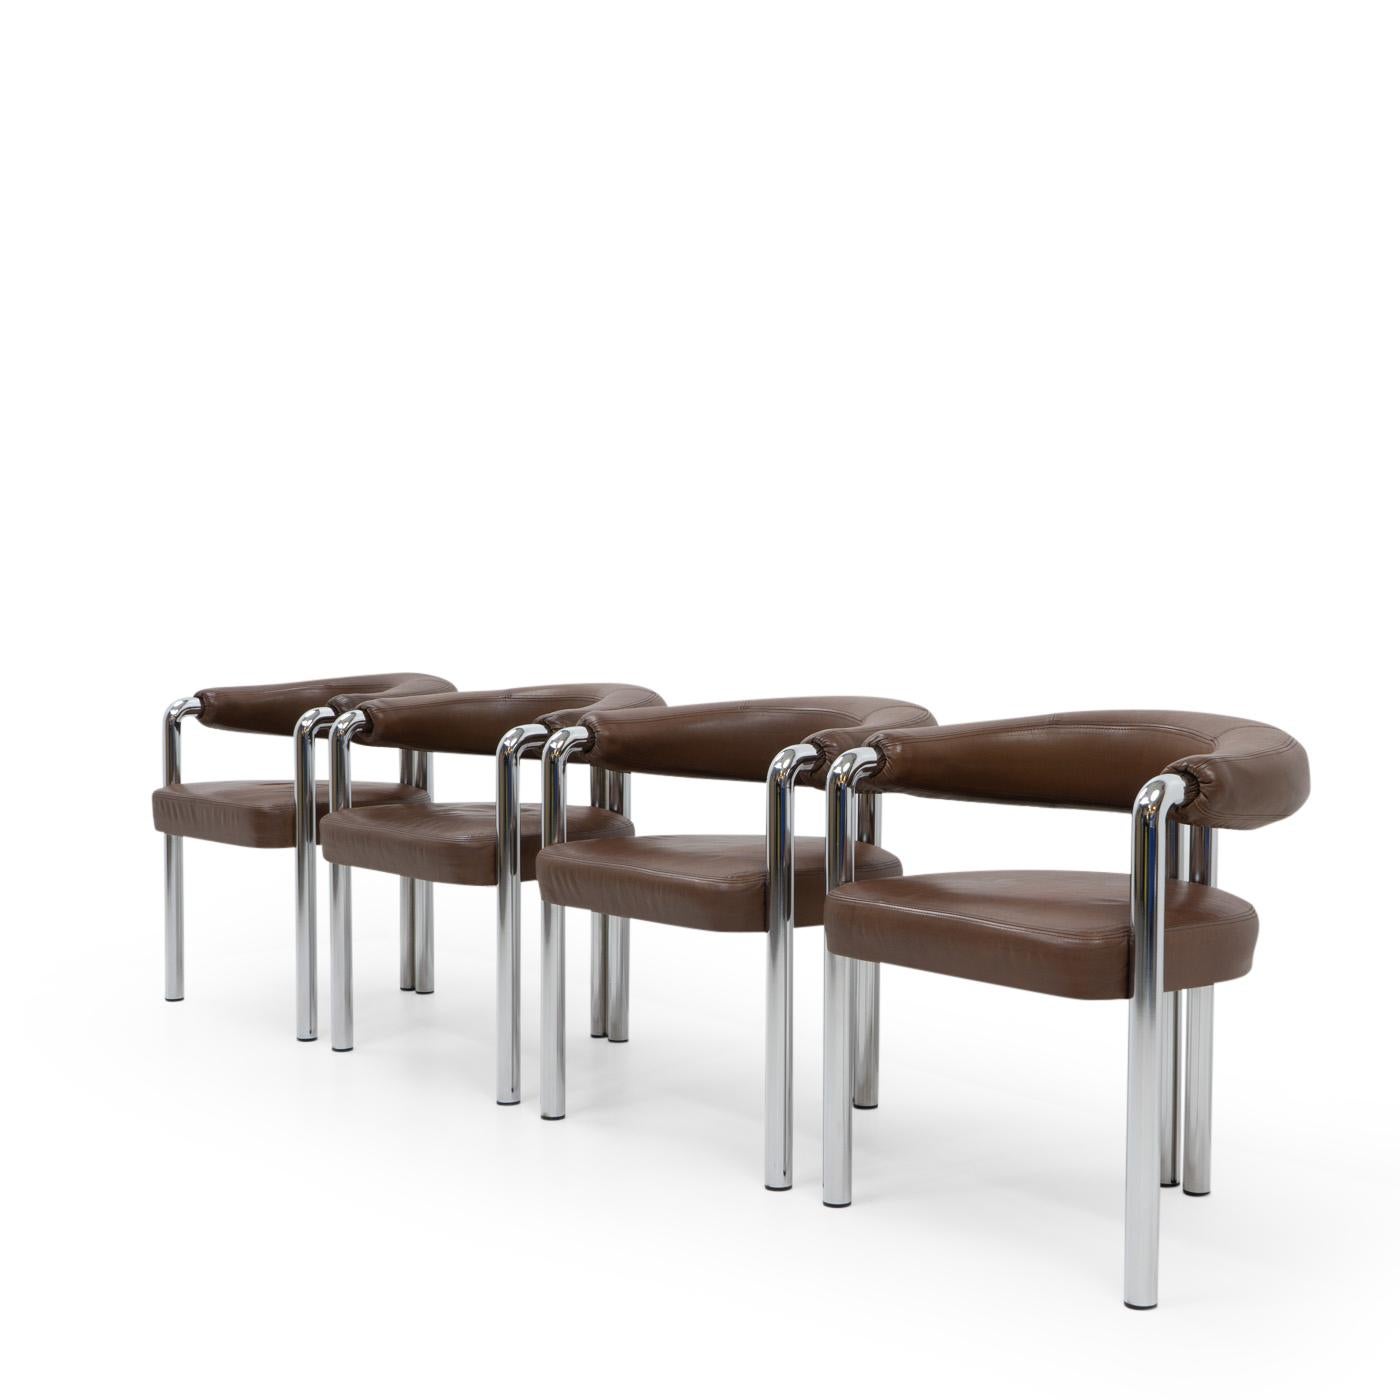 Vier Sessel aus Leder und verchromtem Stahl von der Schweizer Möbelmanufaktur De Sede, die ein hochwertiges Produkt garantieren, das von erfahrenen Handwerkern aus den besten Schweizer Kuhhäuten handgefertigt wird.

Diese skulpturalen Stühle, die an